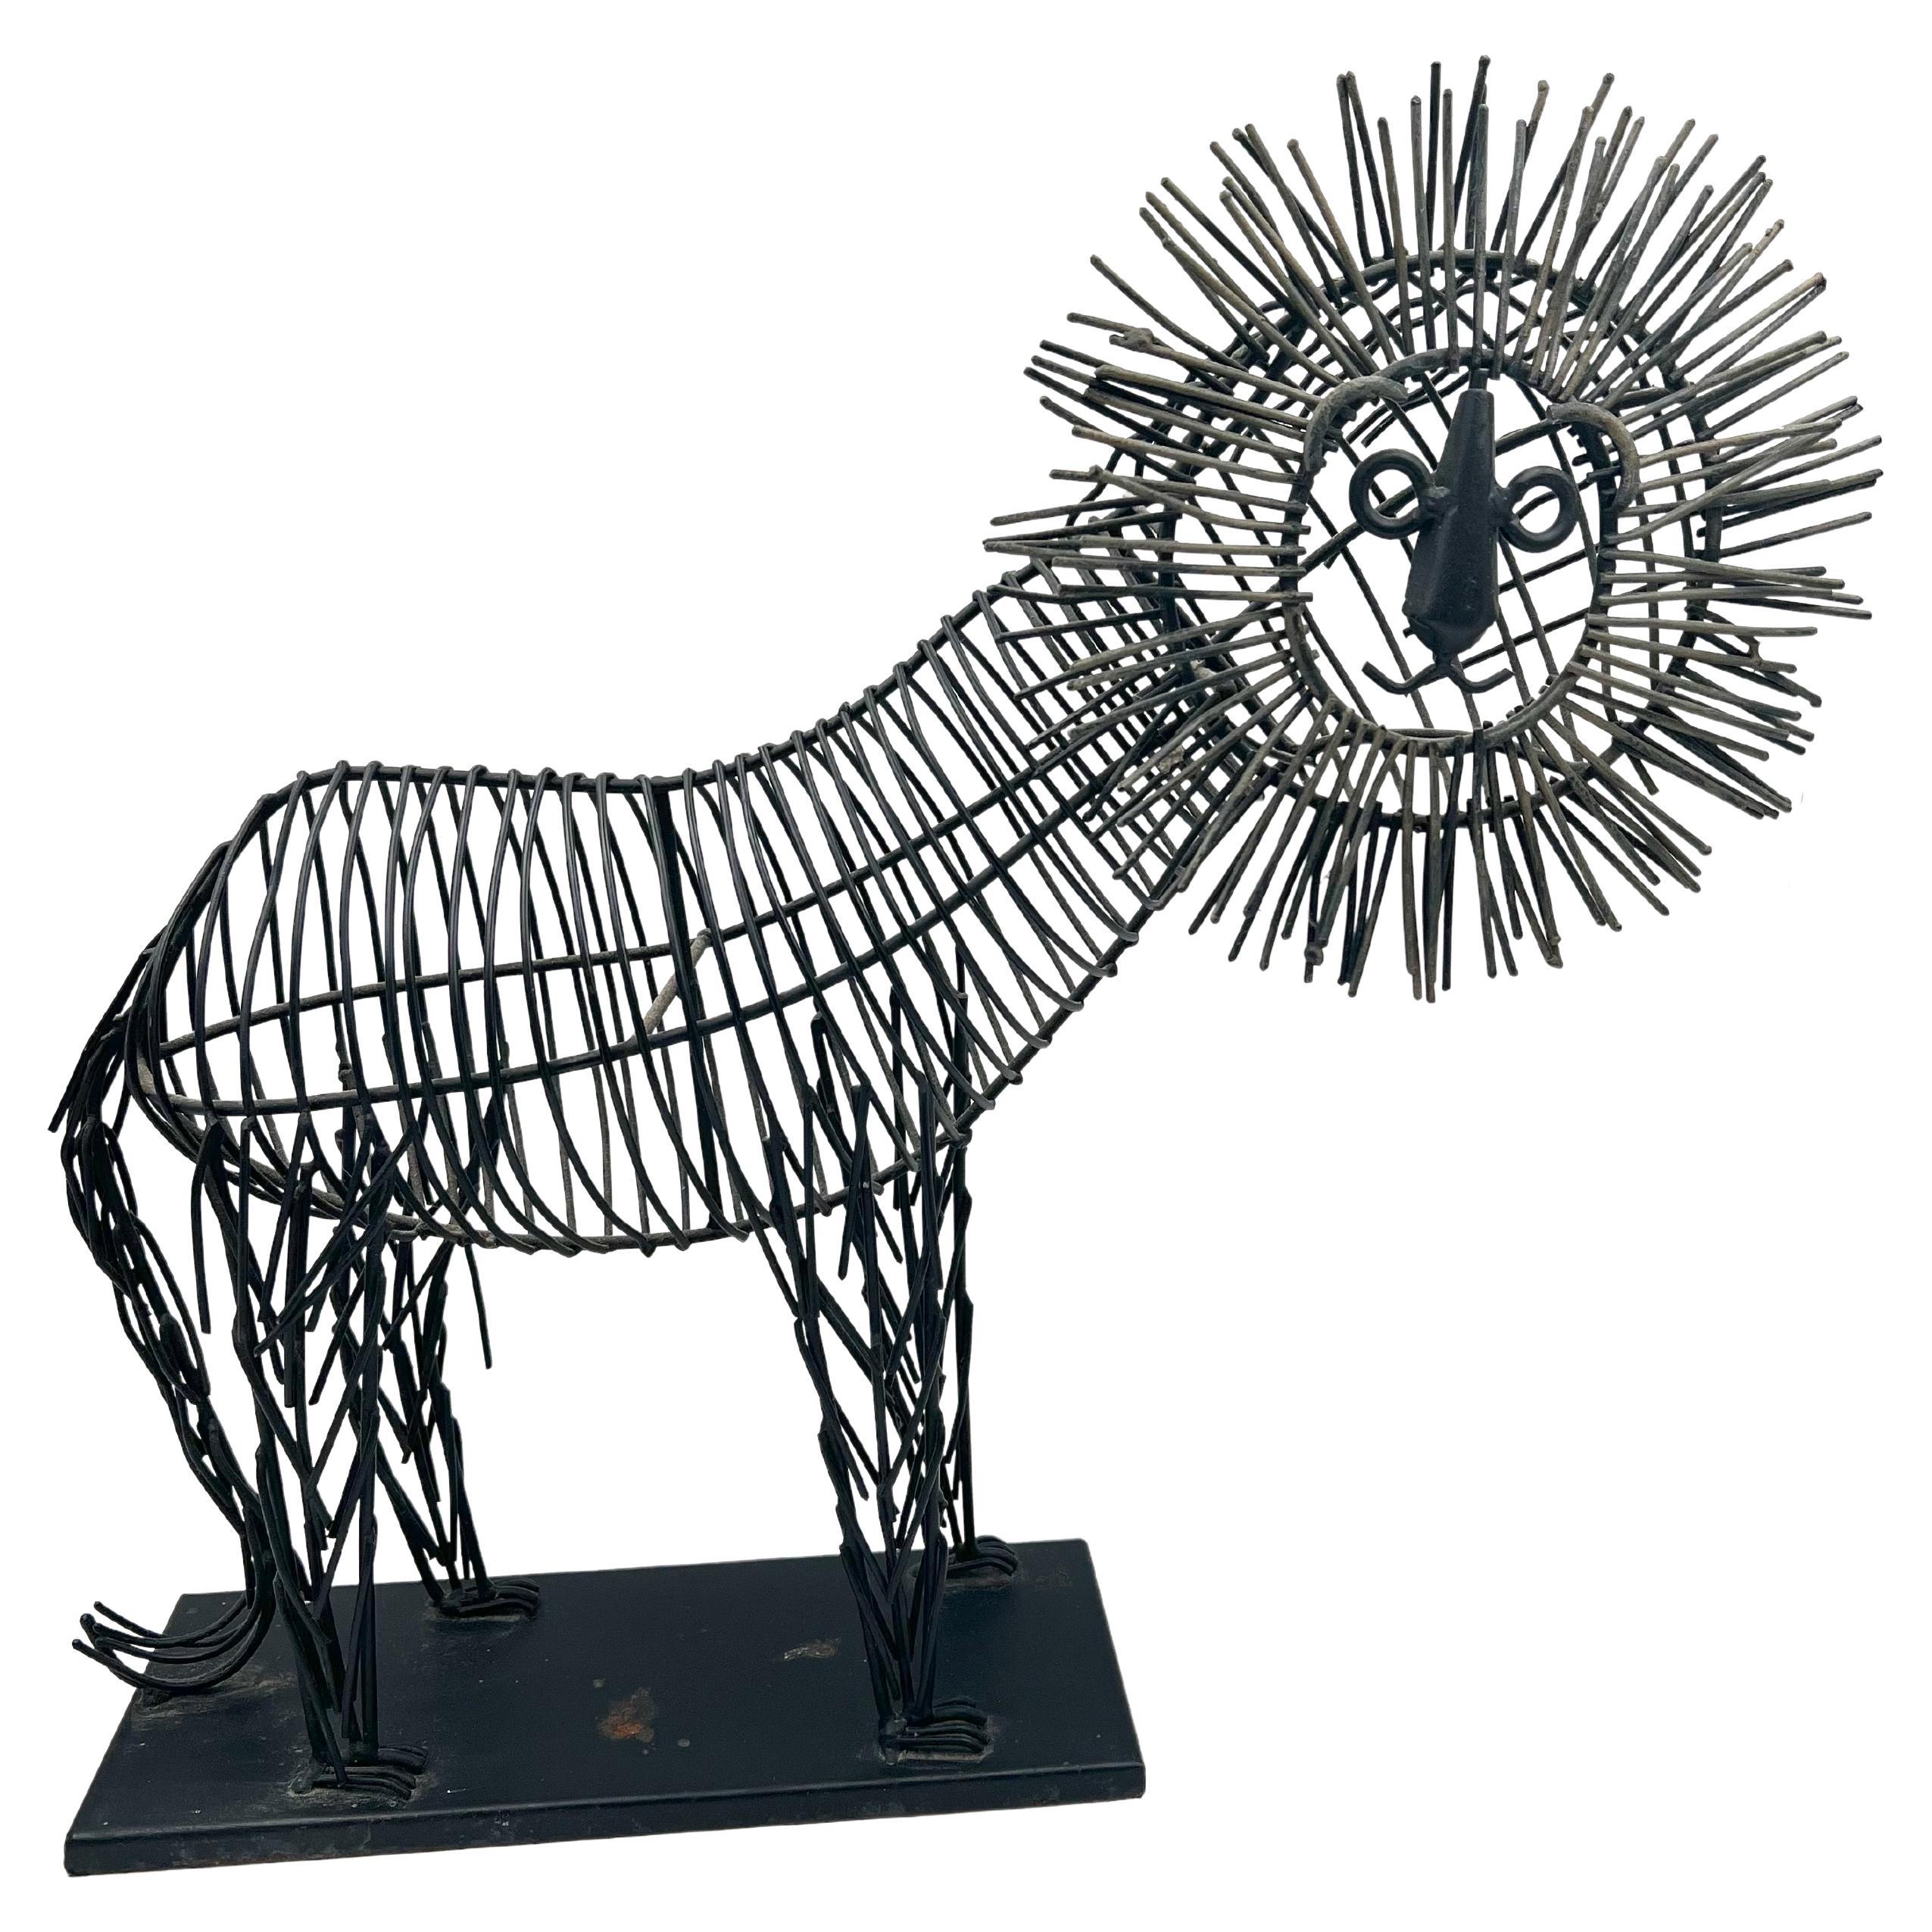 Sculpture de lion fantaisiste en métal métallique dans le style de C. Jere